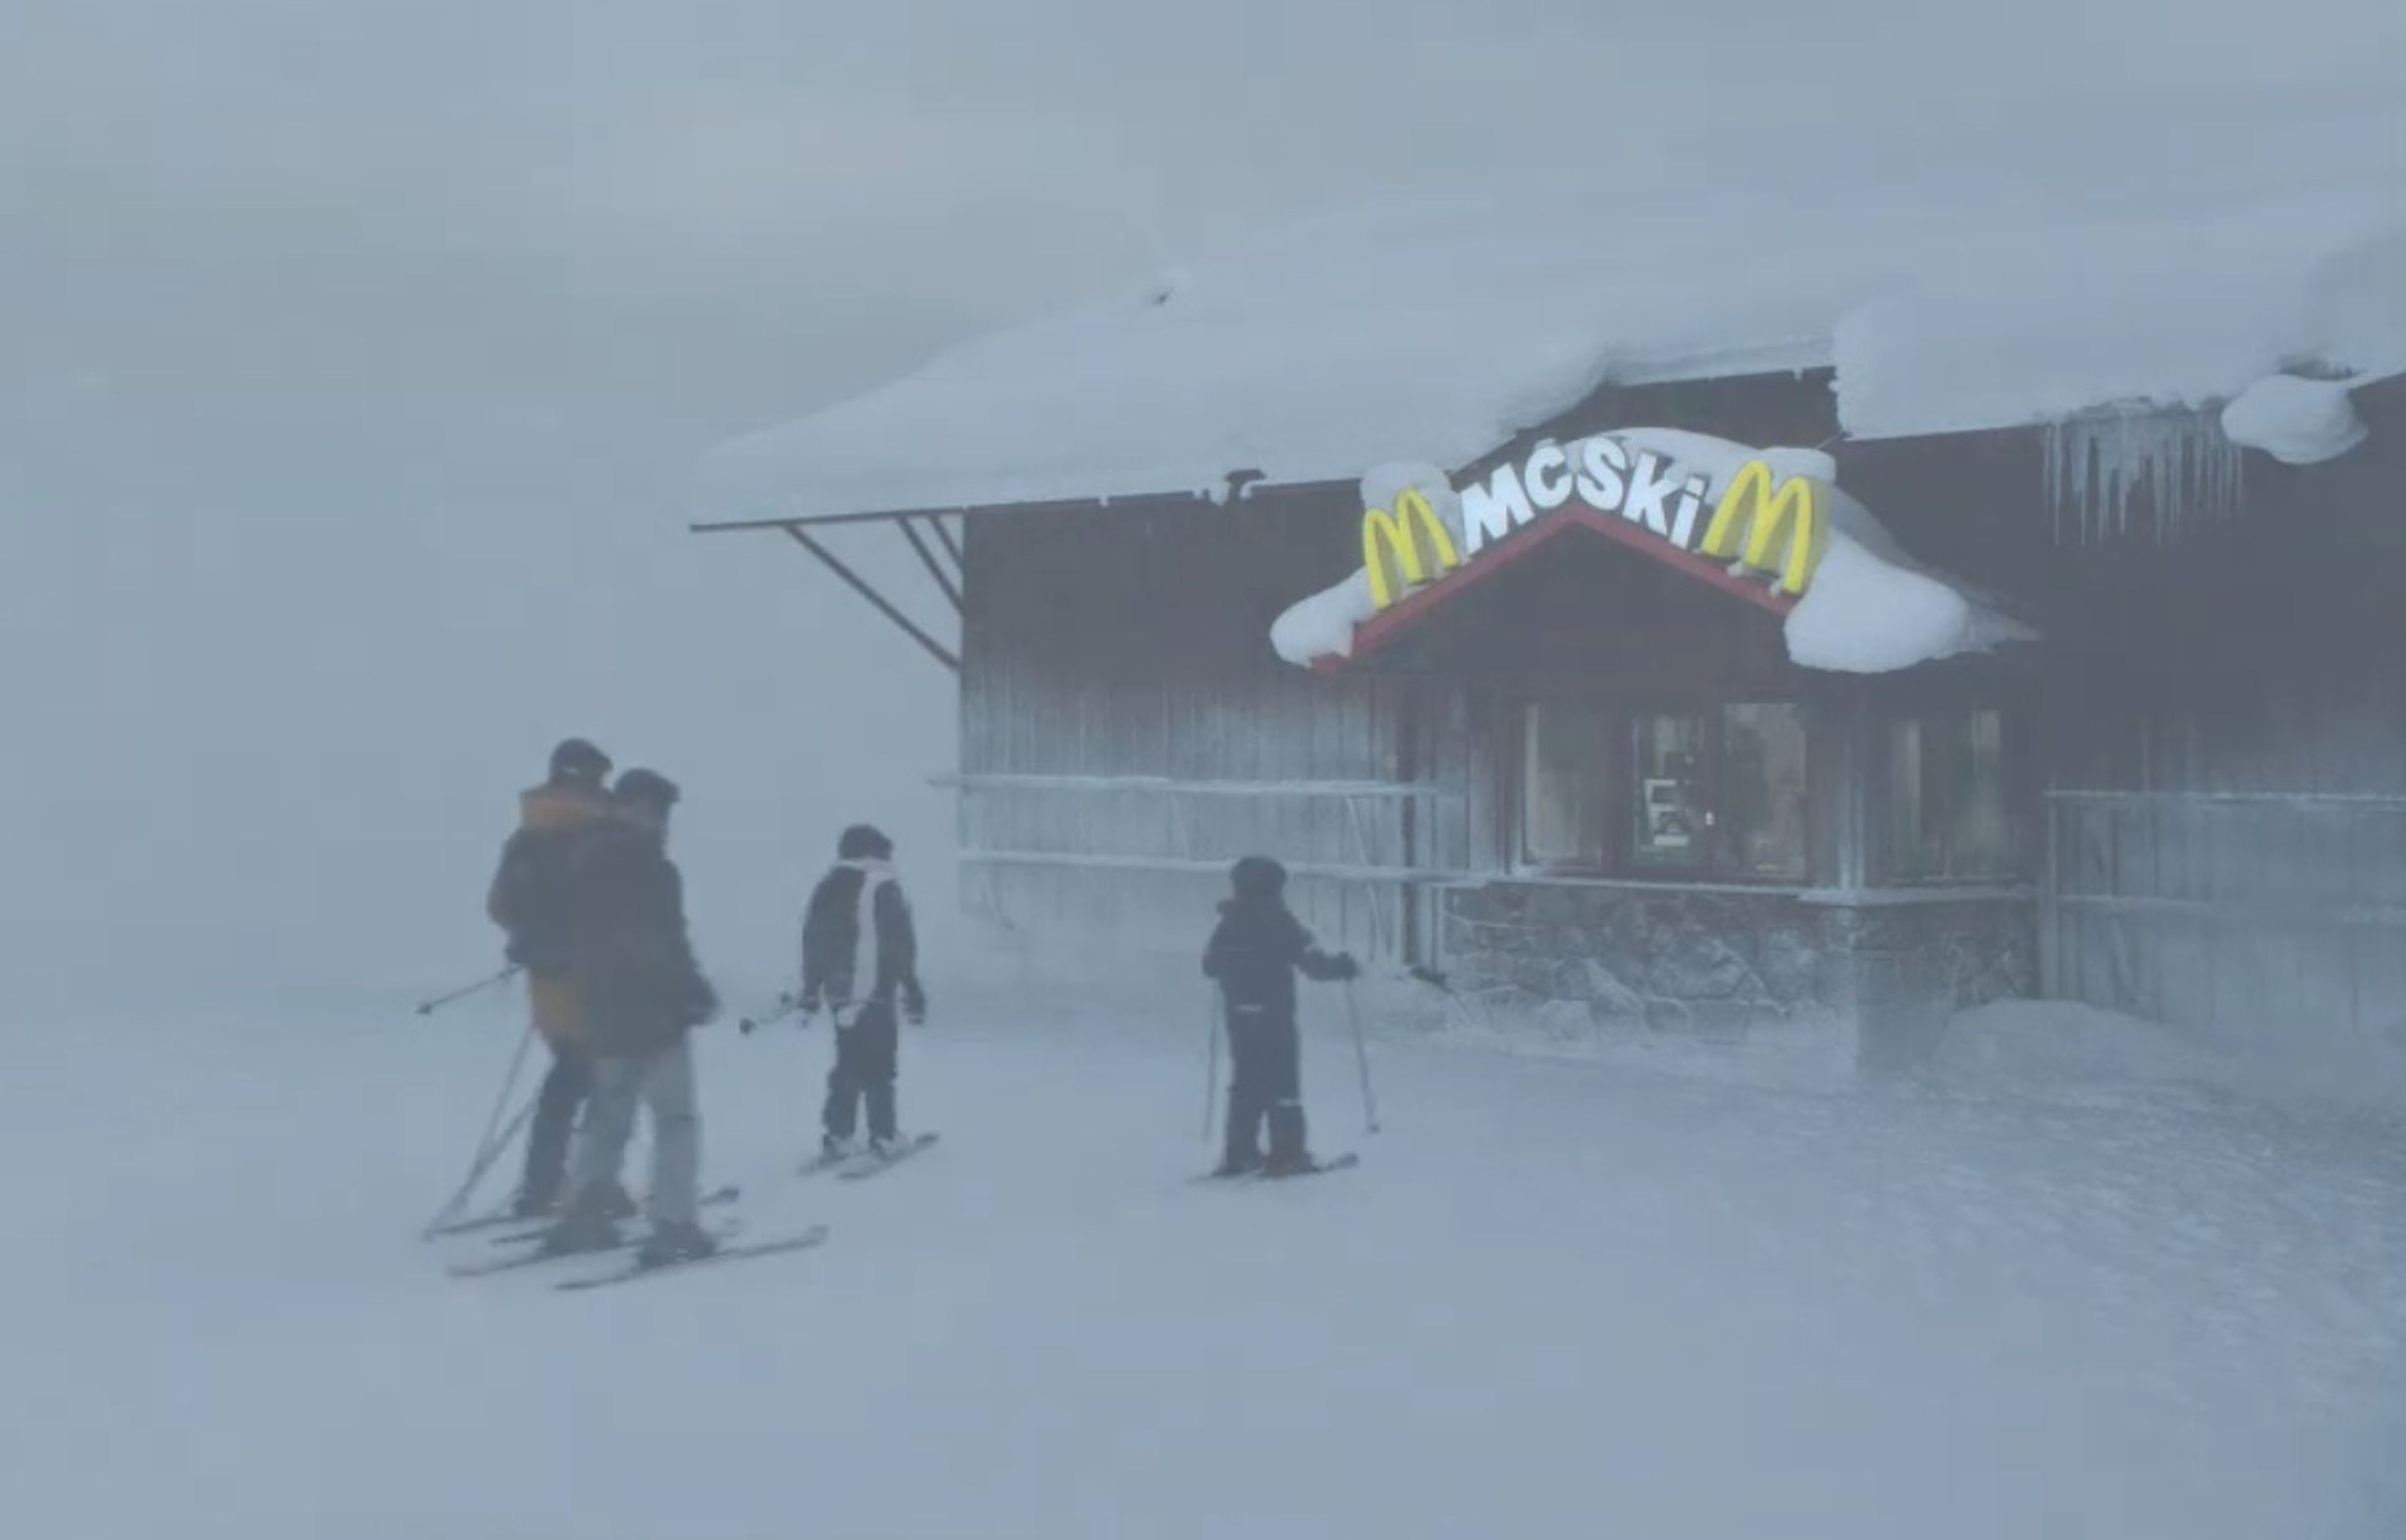 McSki, el único McDonald's del mundo al que solo se puede llegar esquiando